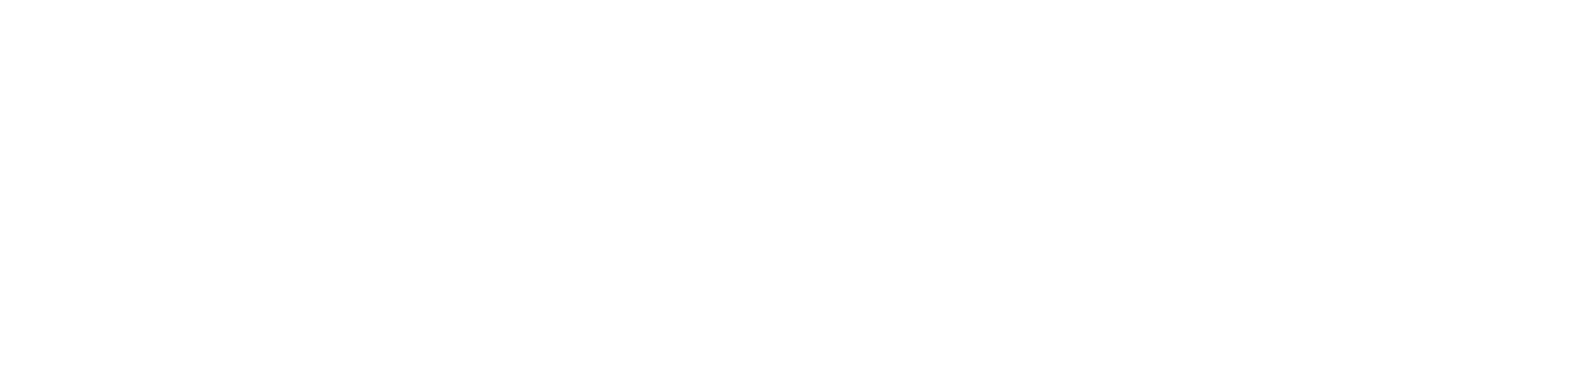 VIZIO logo pour fonds sombres (PNG transparent)